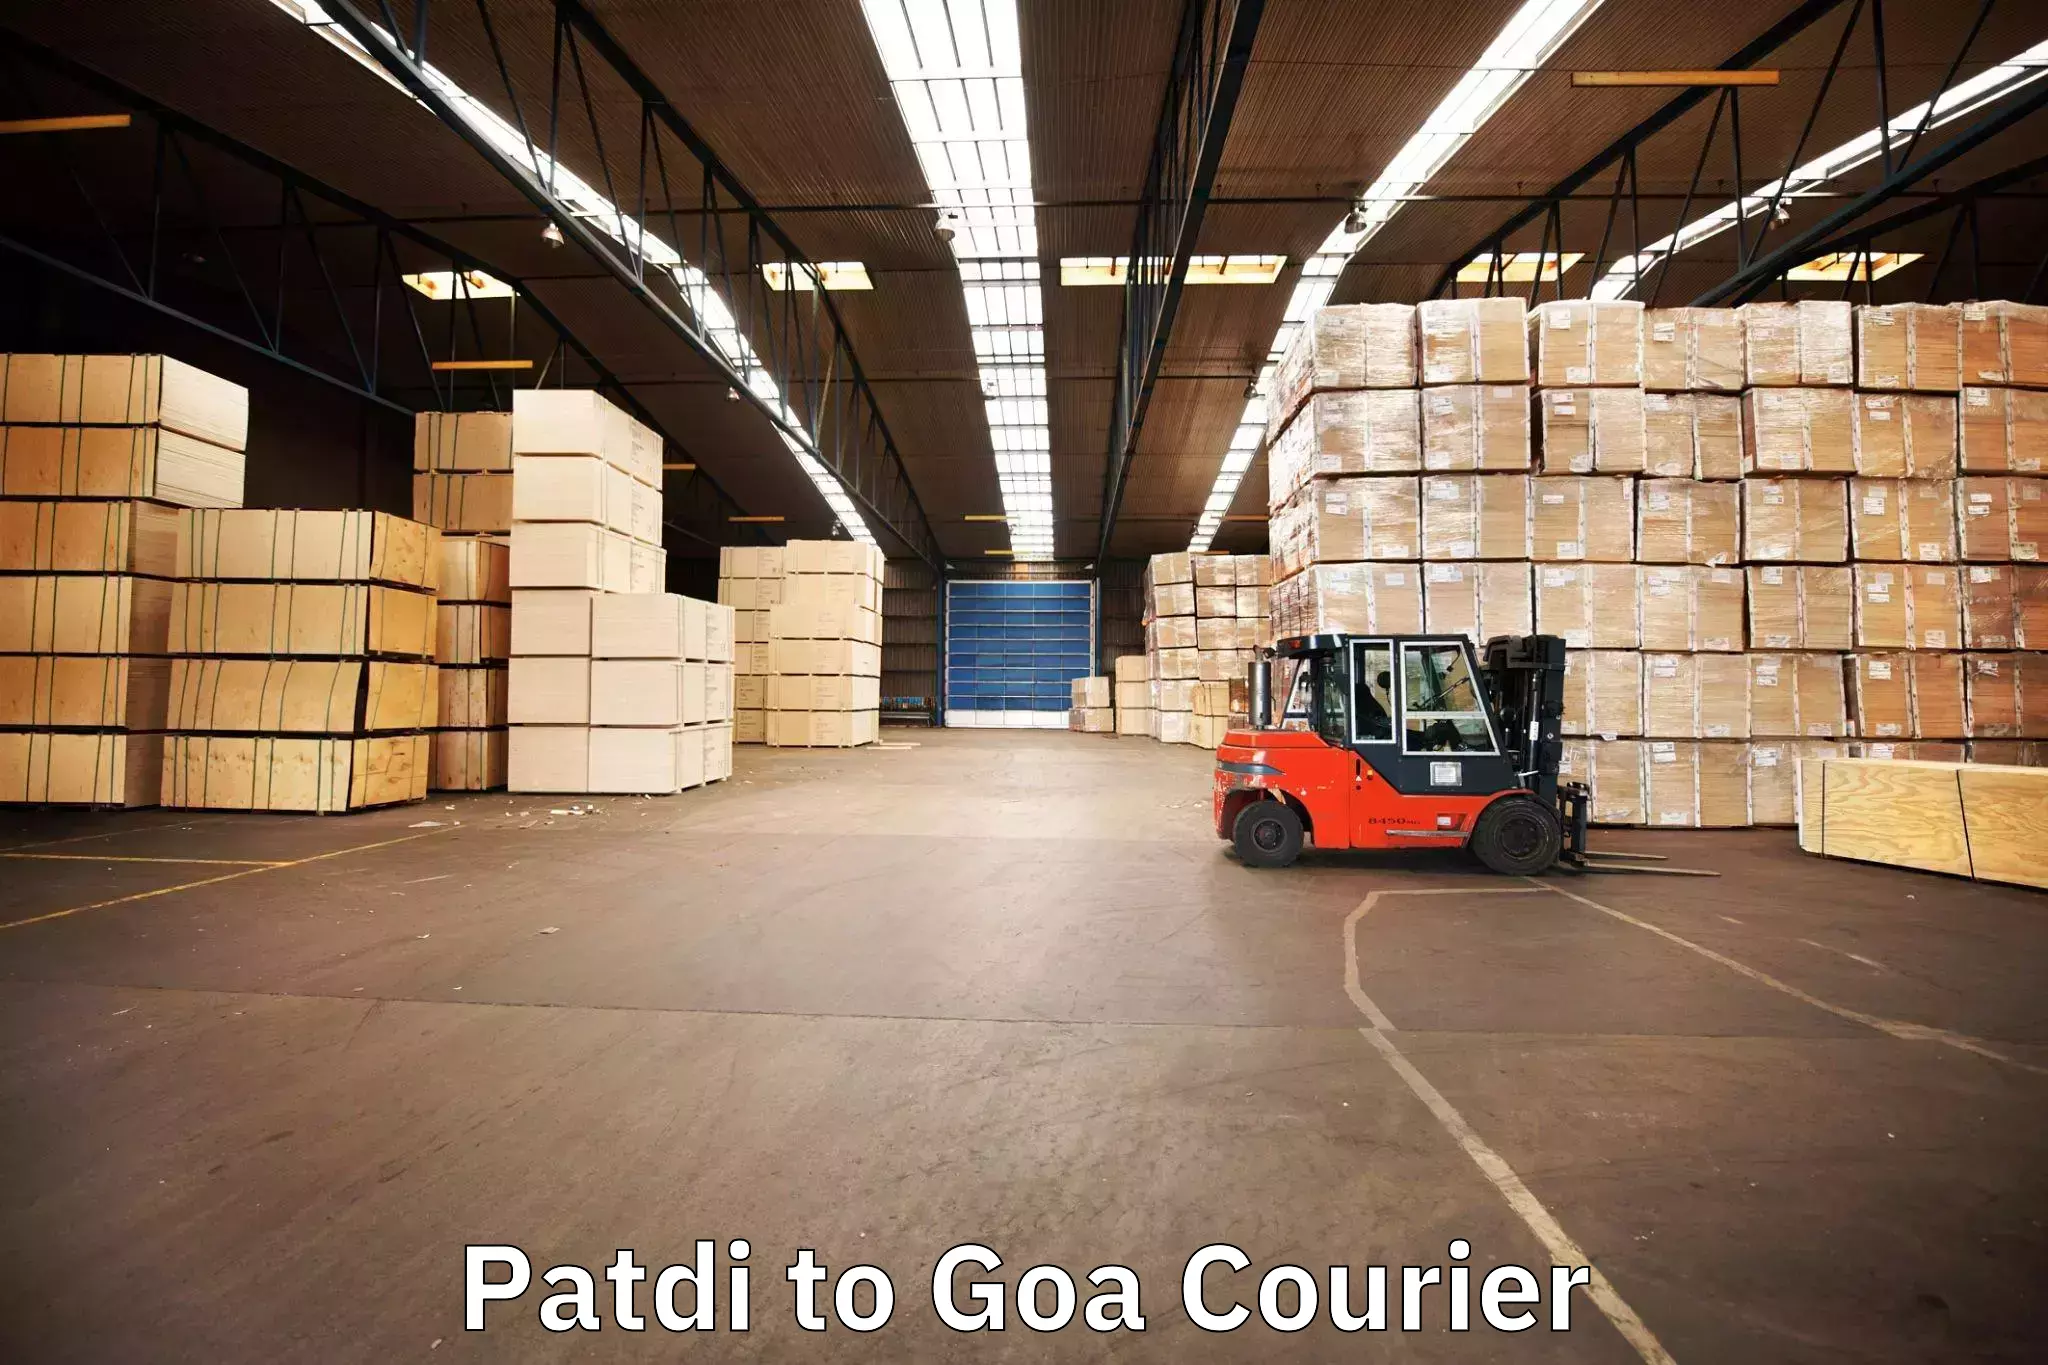 Furniture delivery service Patdi to Goa University